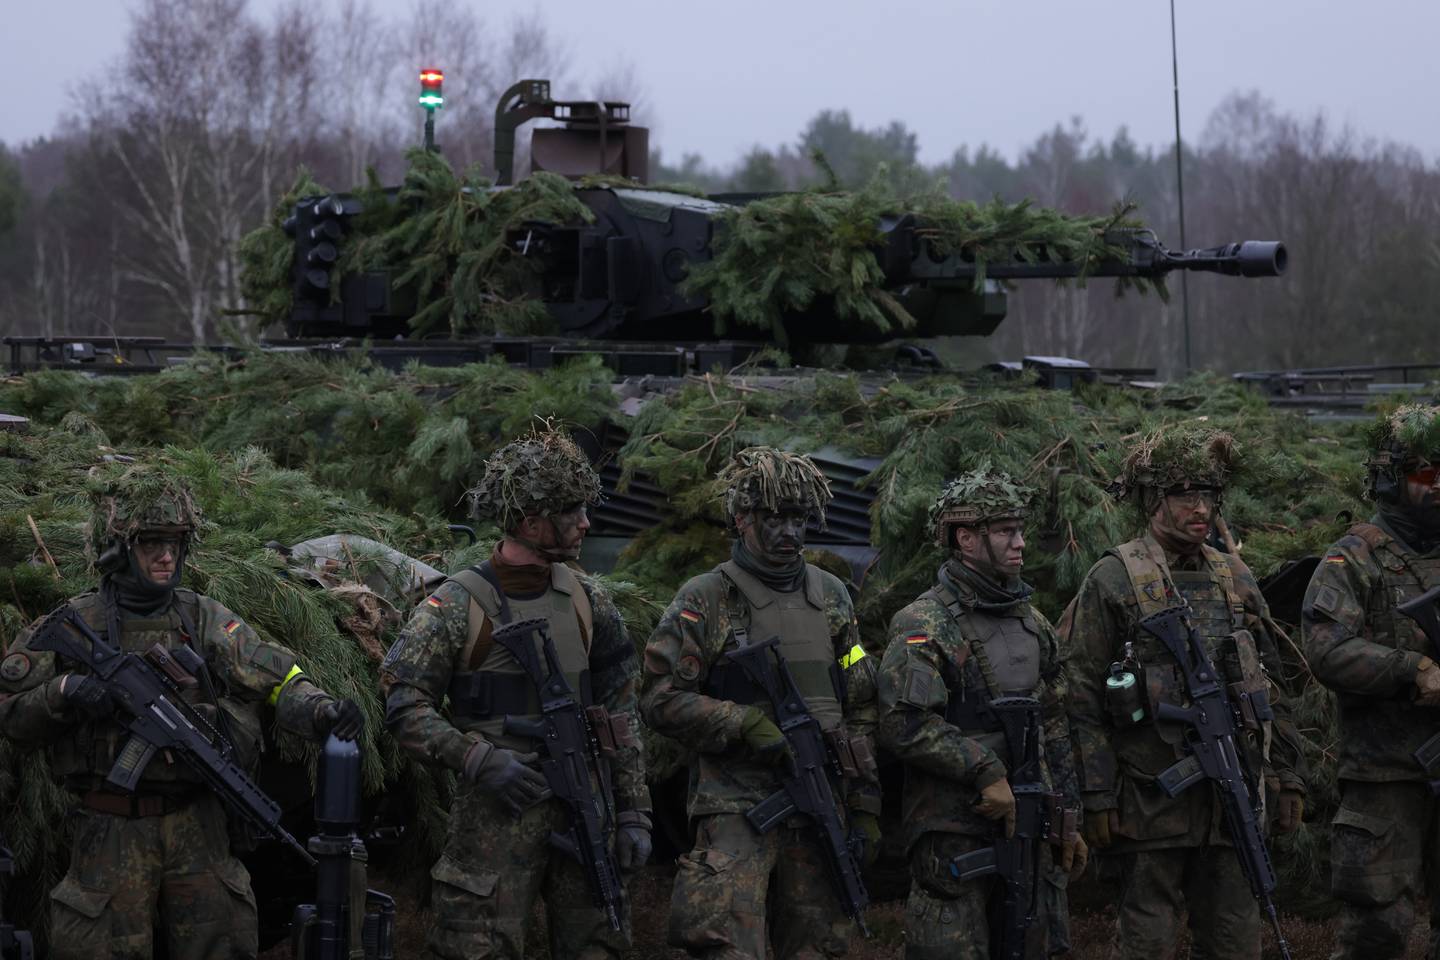 Infanteriesoldaten der Bundeswehr vor einem Schützenpanzer Puma bei einem Besuch des deutschen Verteidigungsministers Boris Pistorius am 26. Januar in der Nähe von Möckern, Deutschland.  Getty